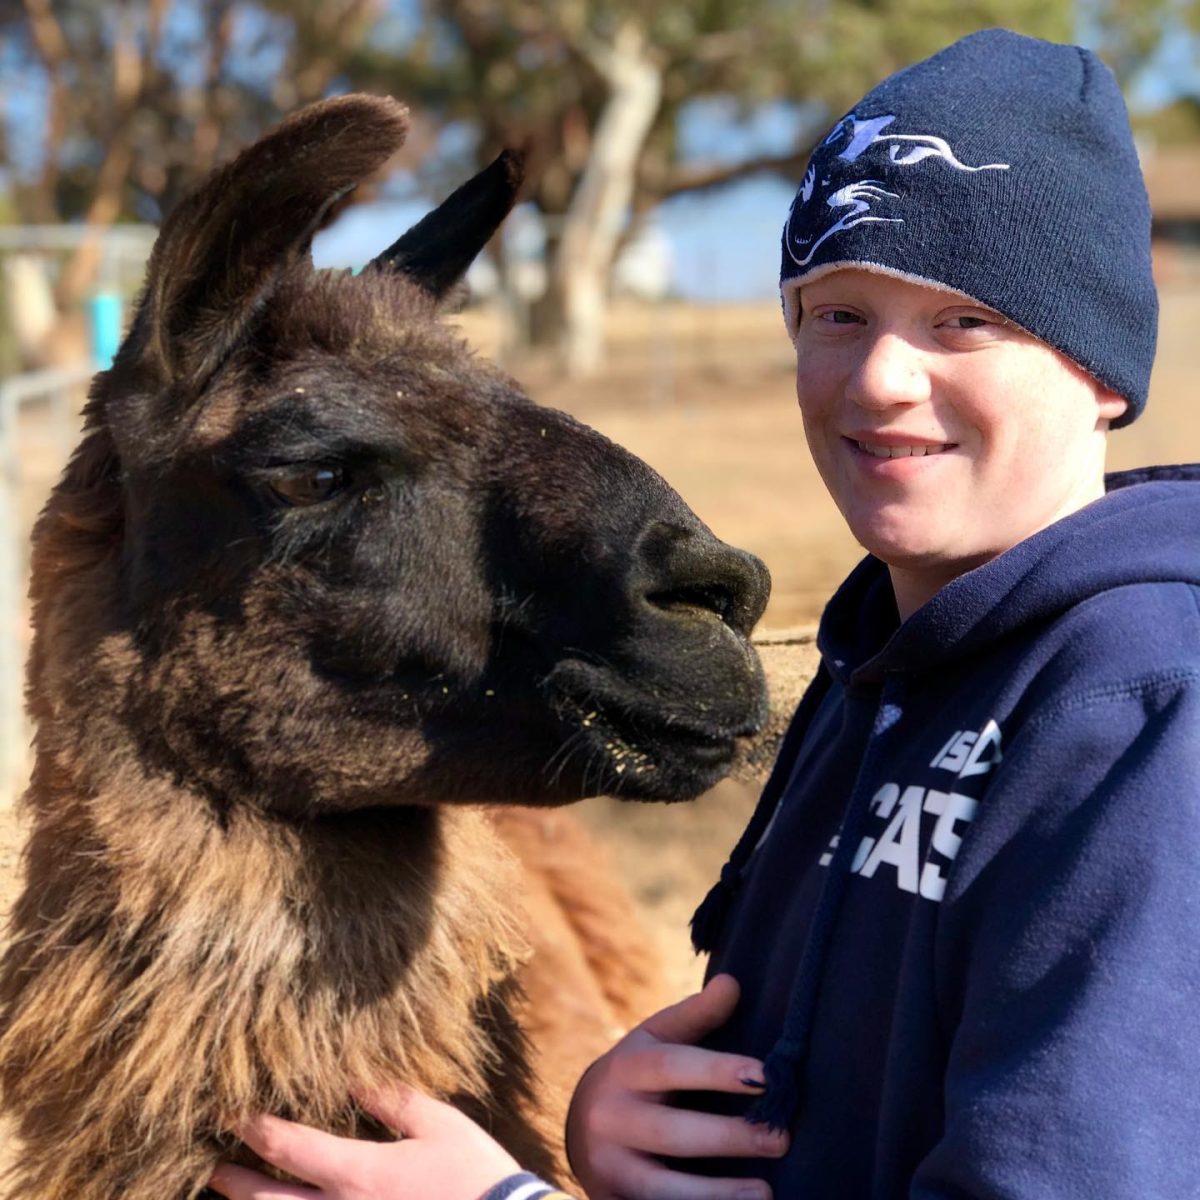 Boy in beanie with llama